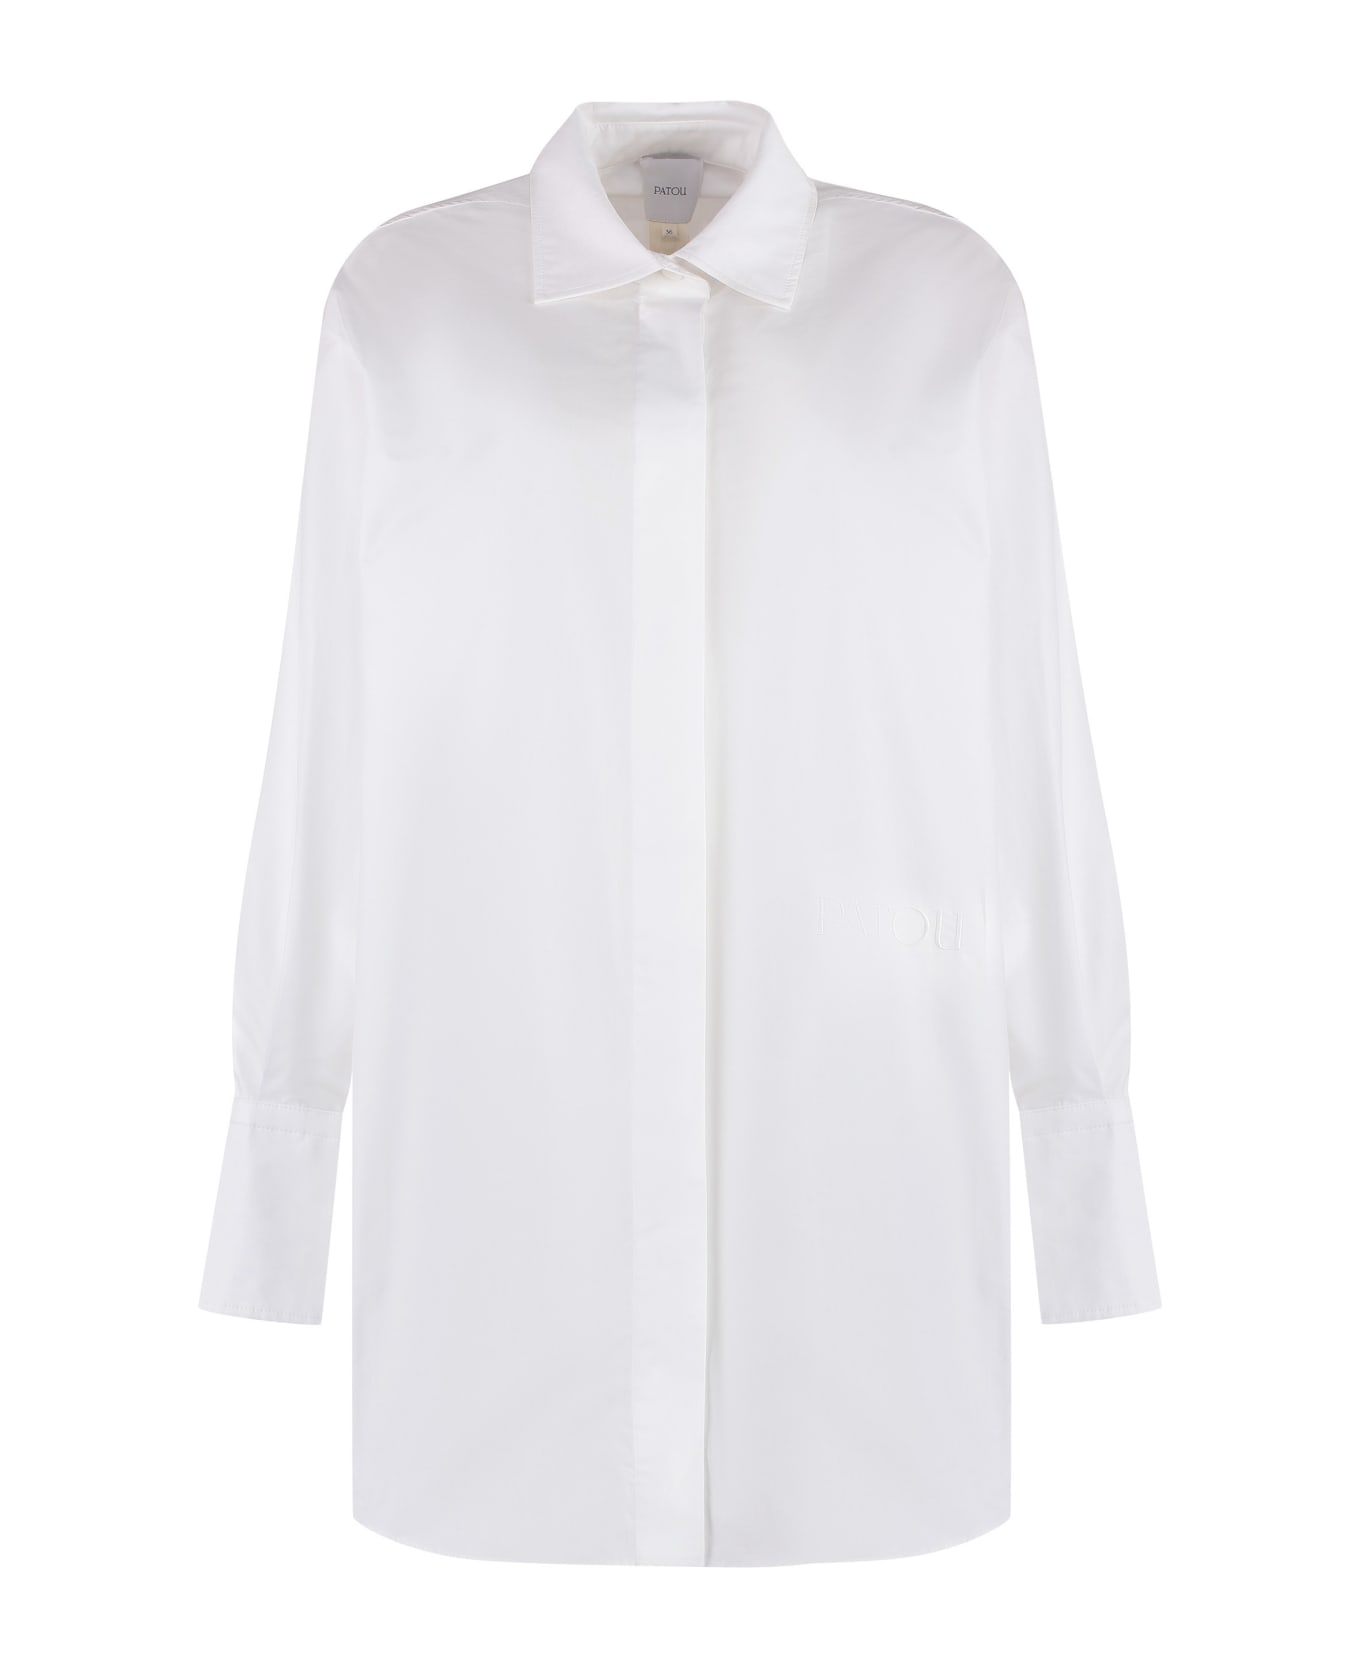 Patou Cotton Shirtdress - White